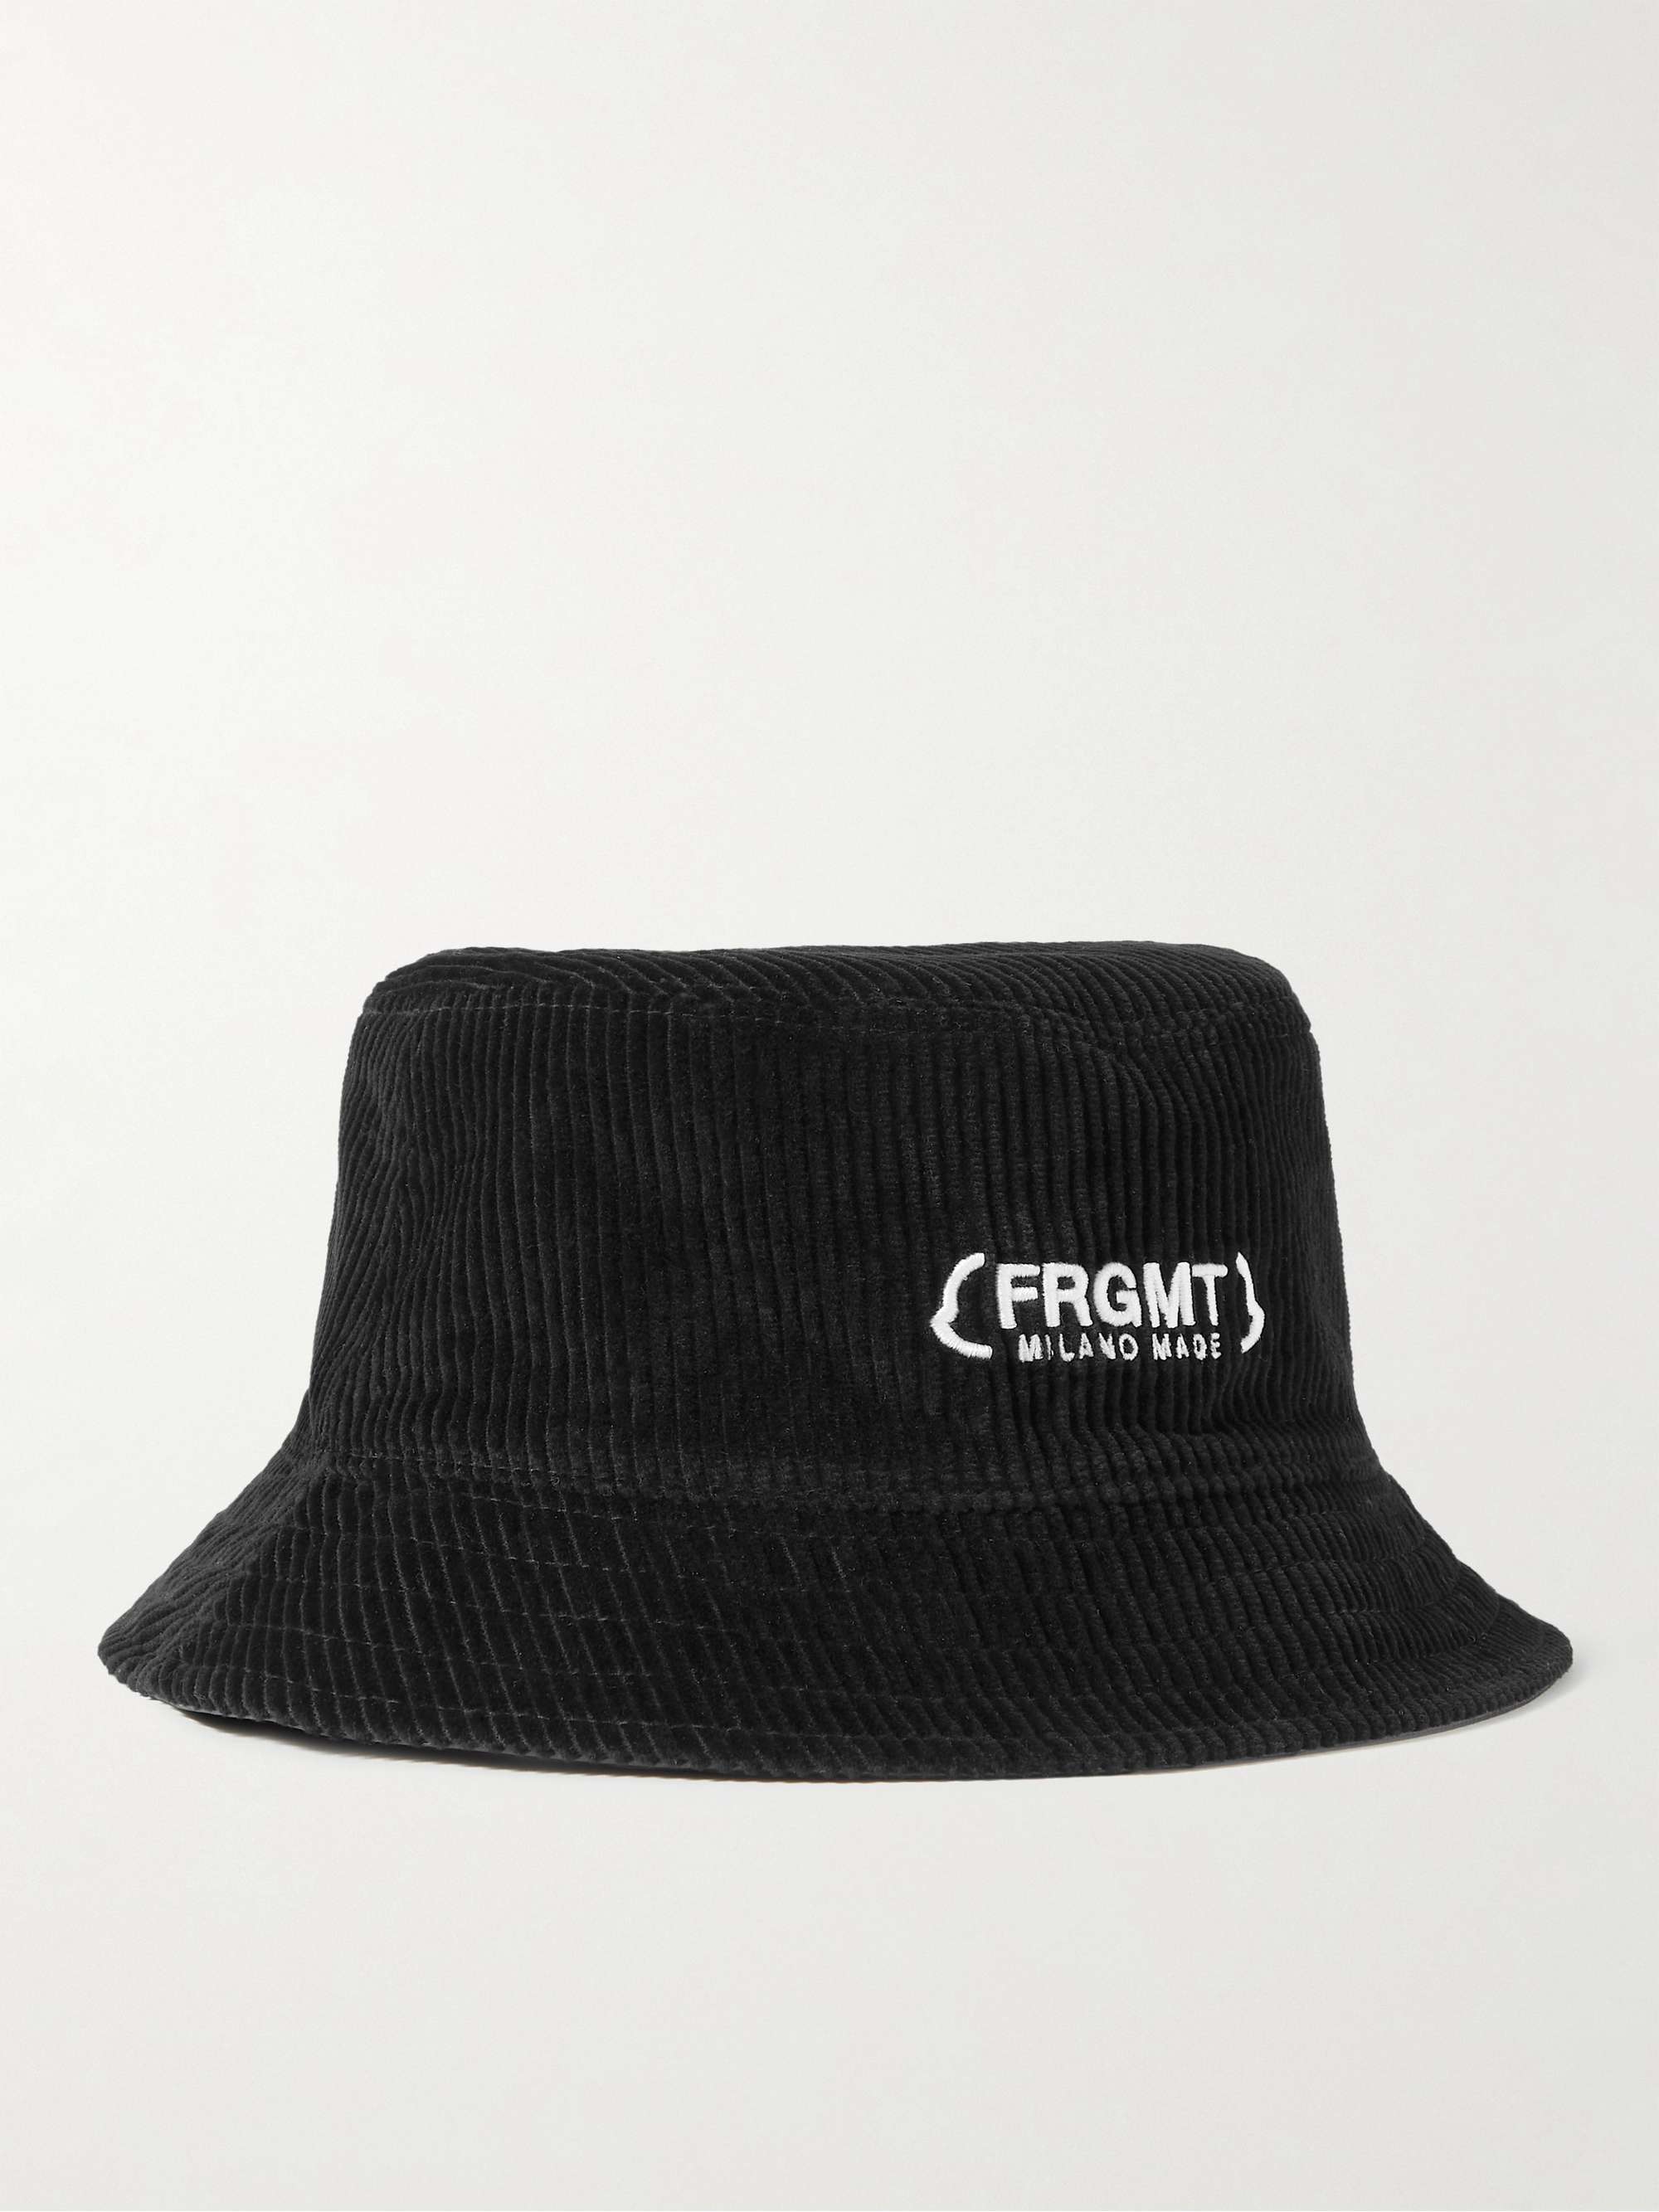 MONCLER GENIUS 7 Moncler FRGMT Hiroshi Fujiwara Reversible Cotton-Corduroy  and Shell Bucket Hat for Men | MR PORTER